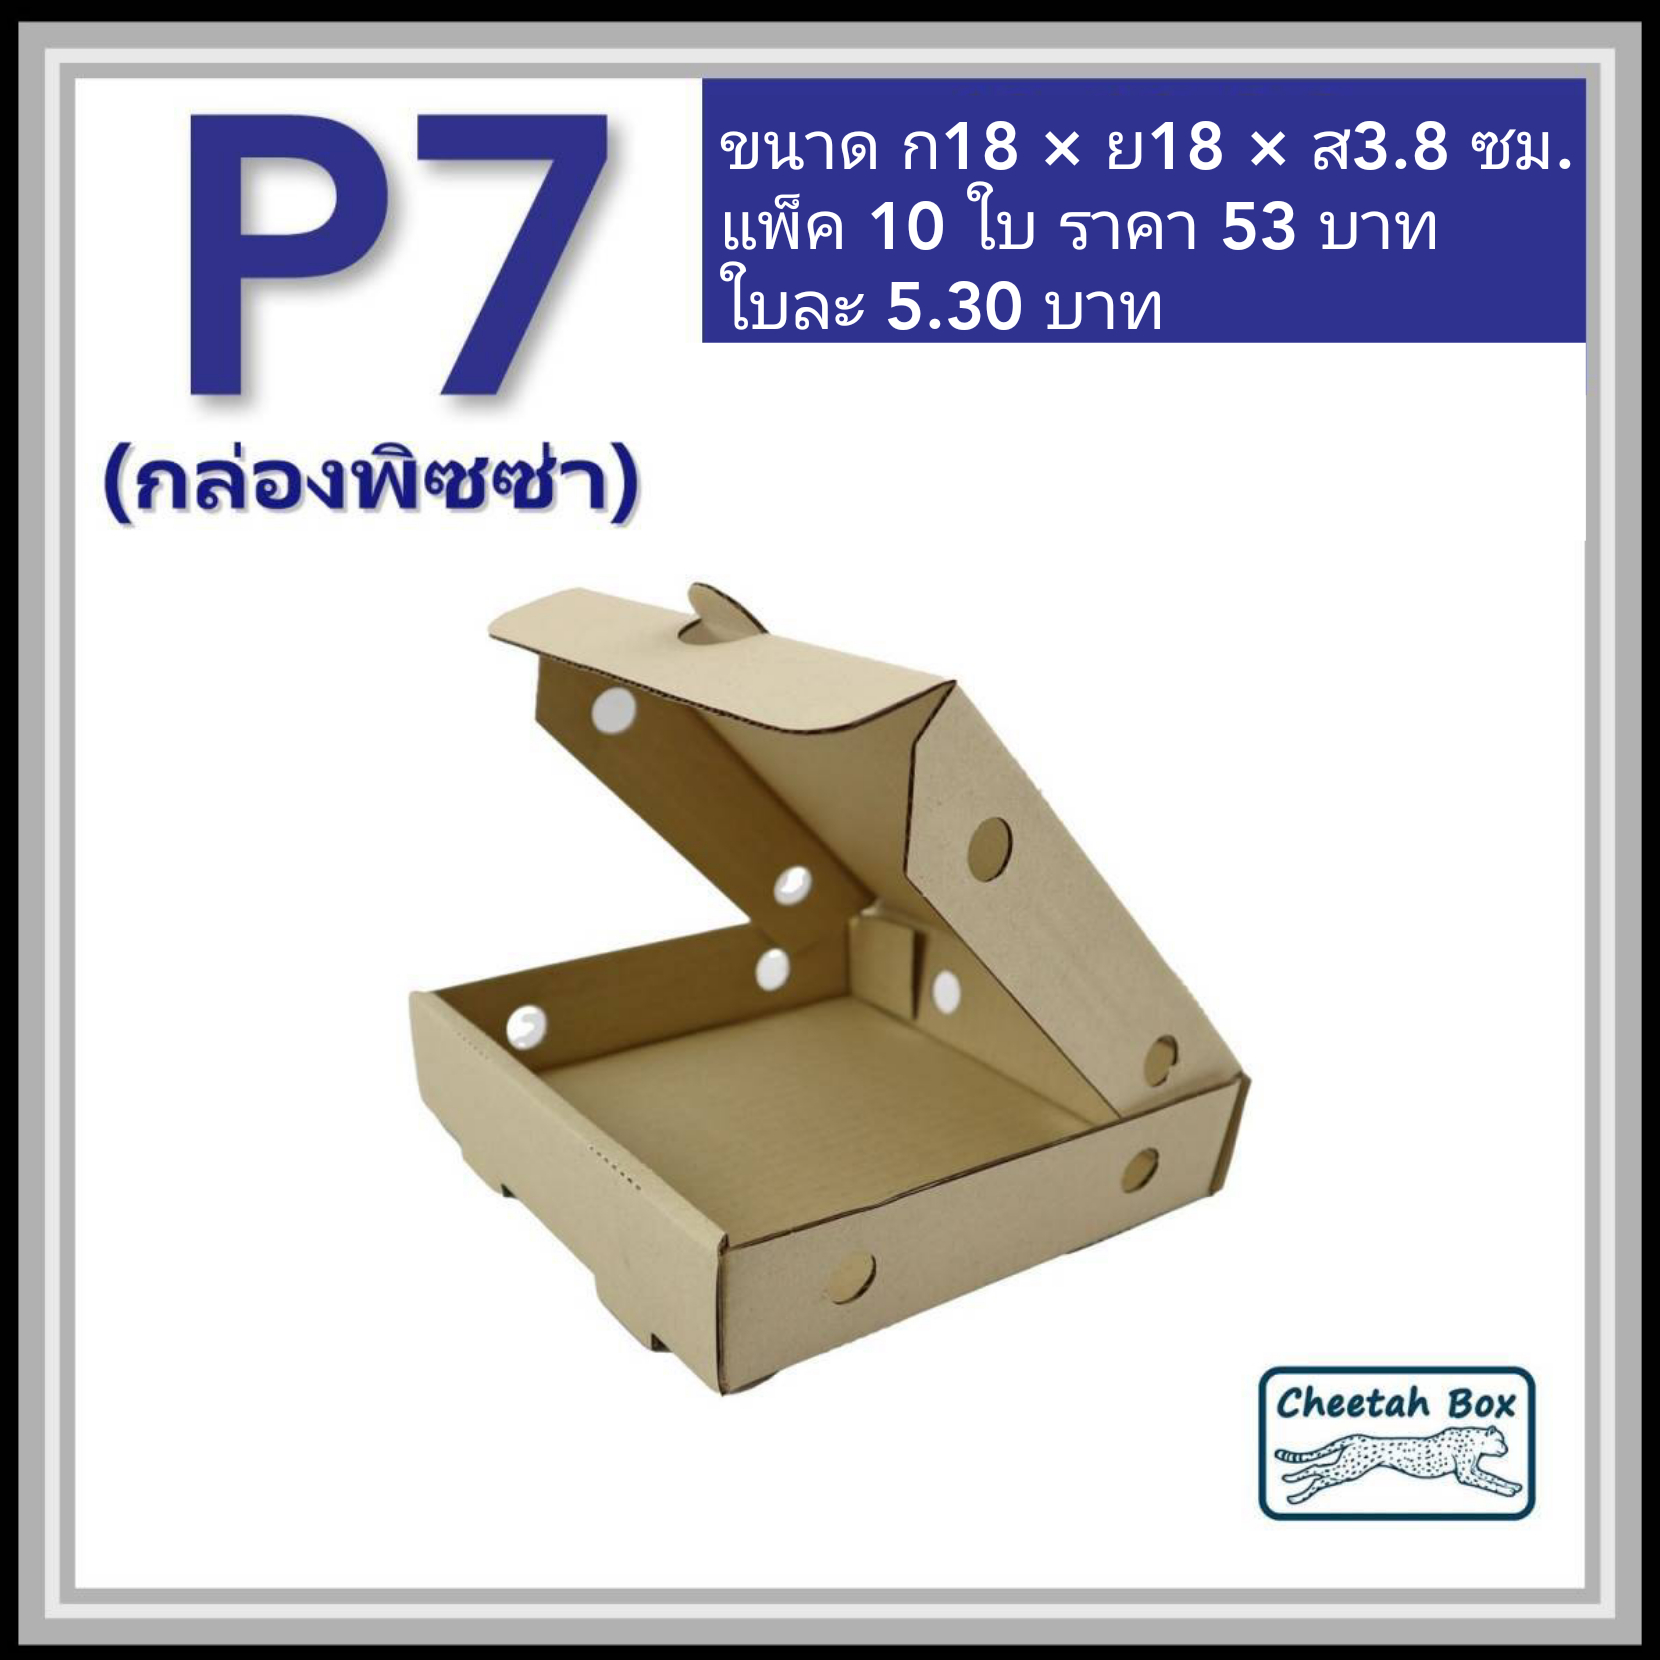 กล่องลูกฟูกใส่พิซซ่า ขนาด 7 นิ้ว (Cheetah Box ขนาด 18W*18L*3.8H CM)